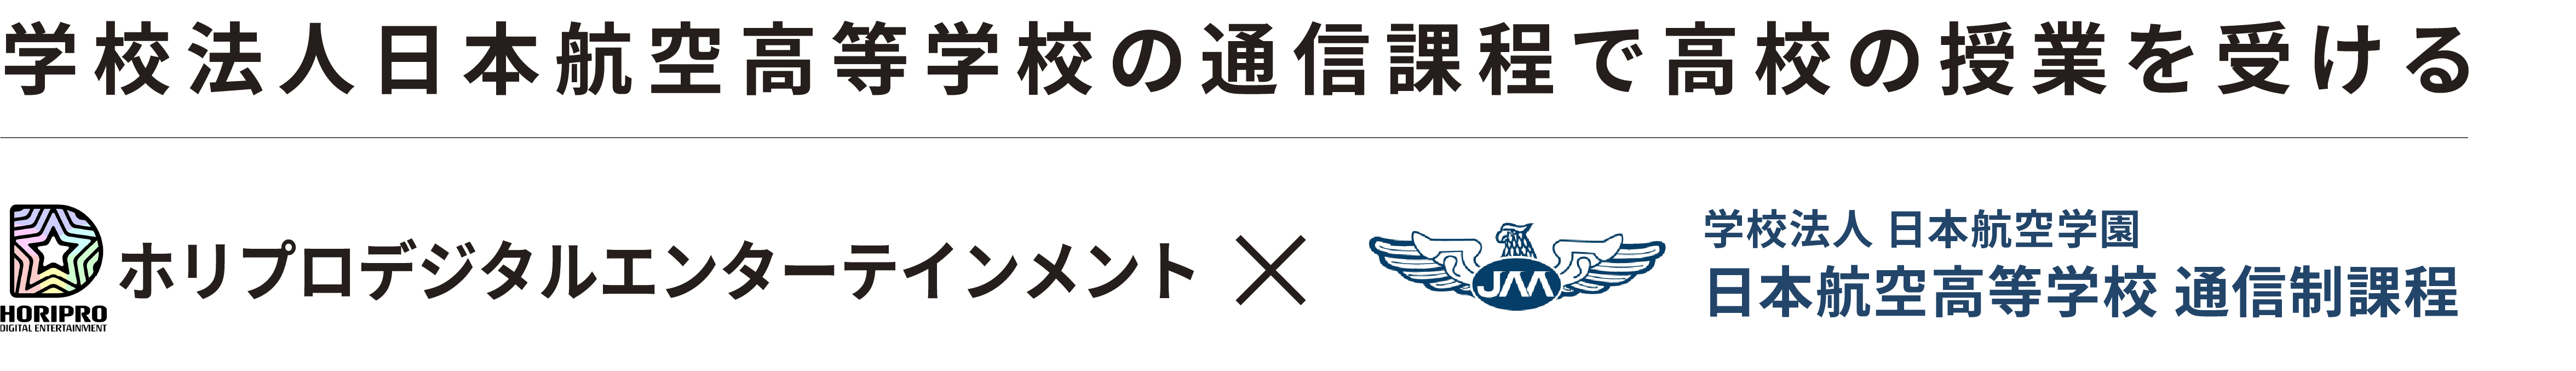 ホリプロデジタル×日本航空